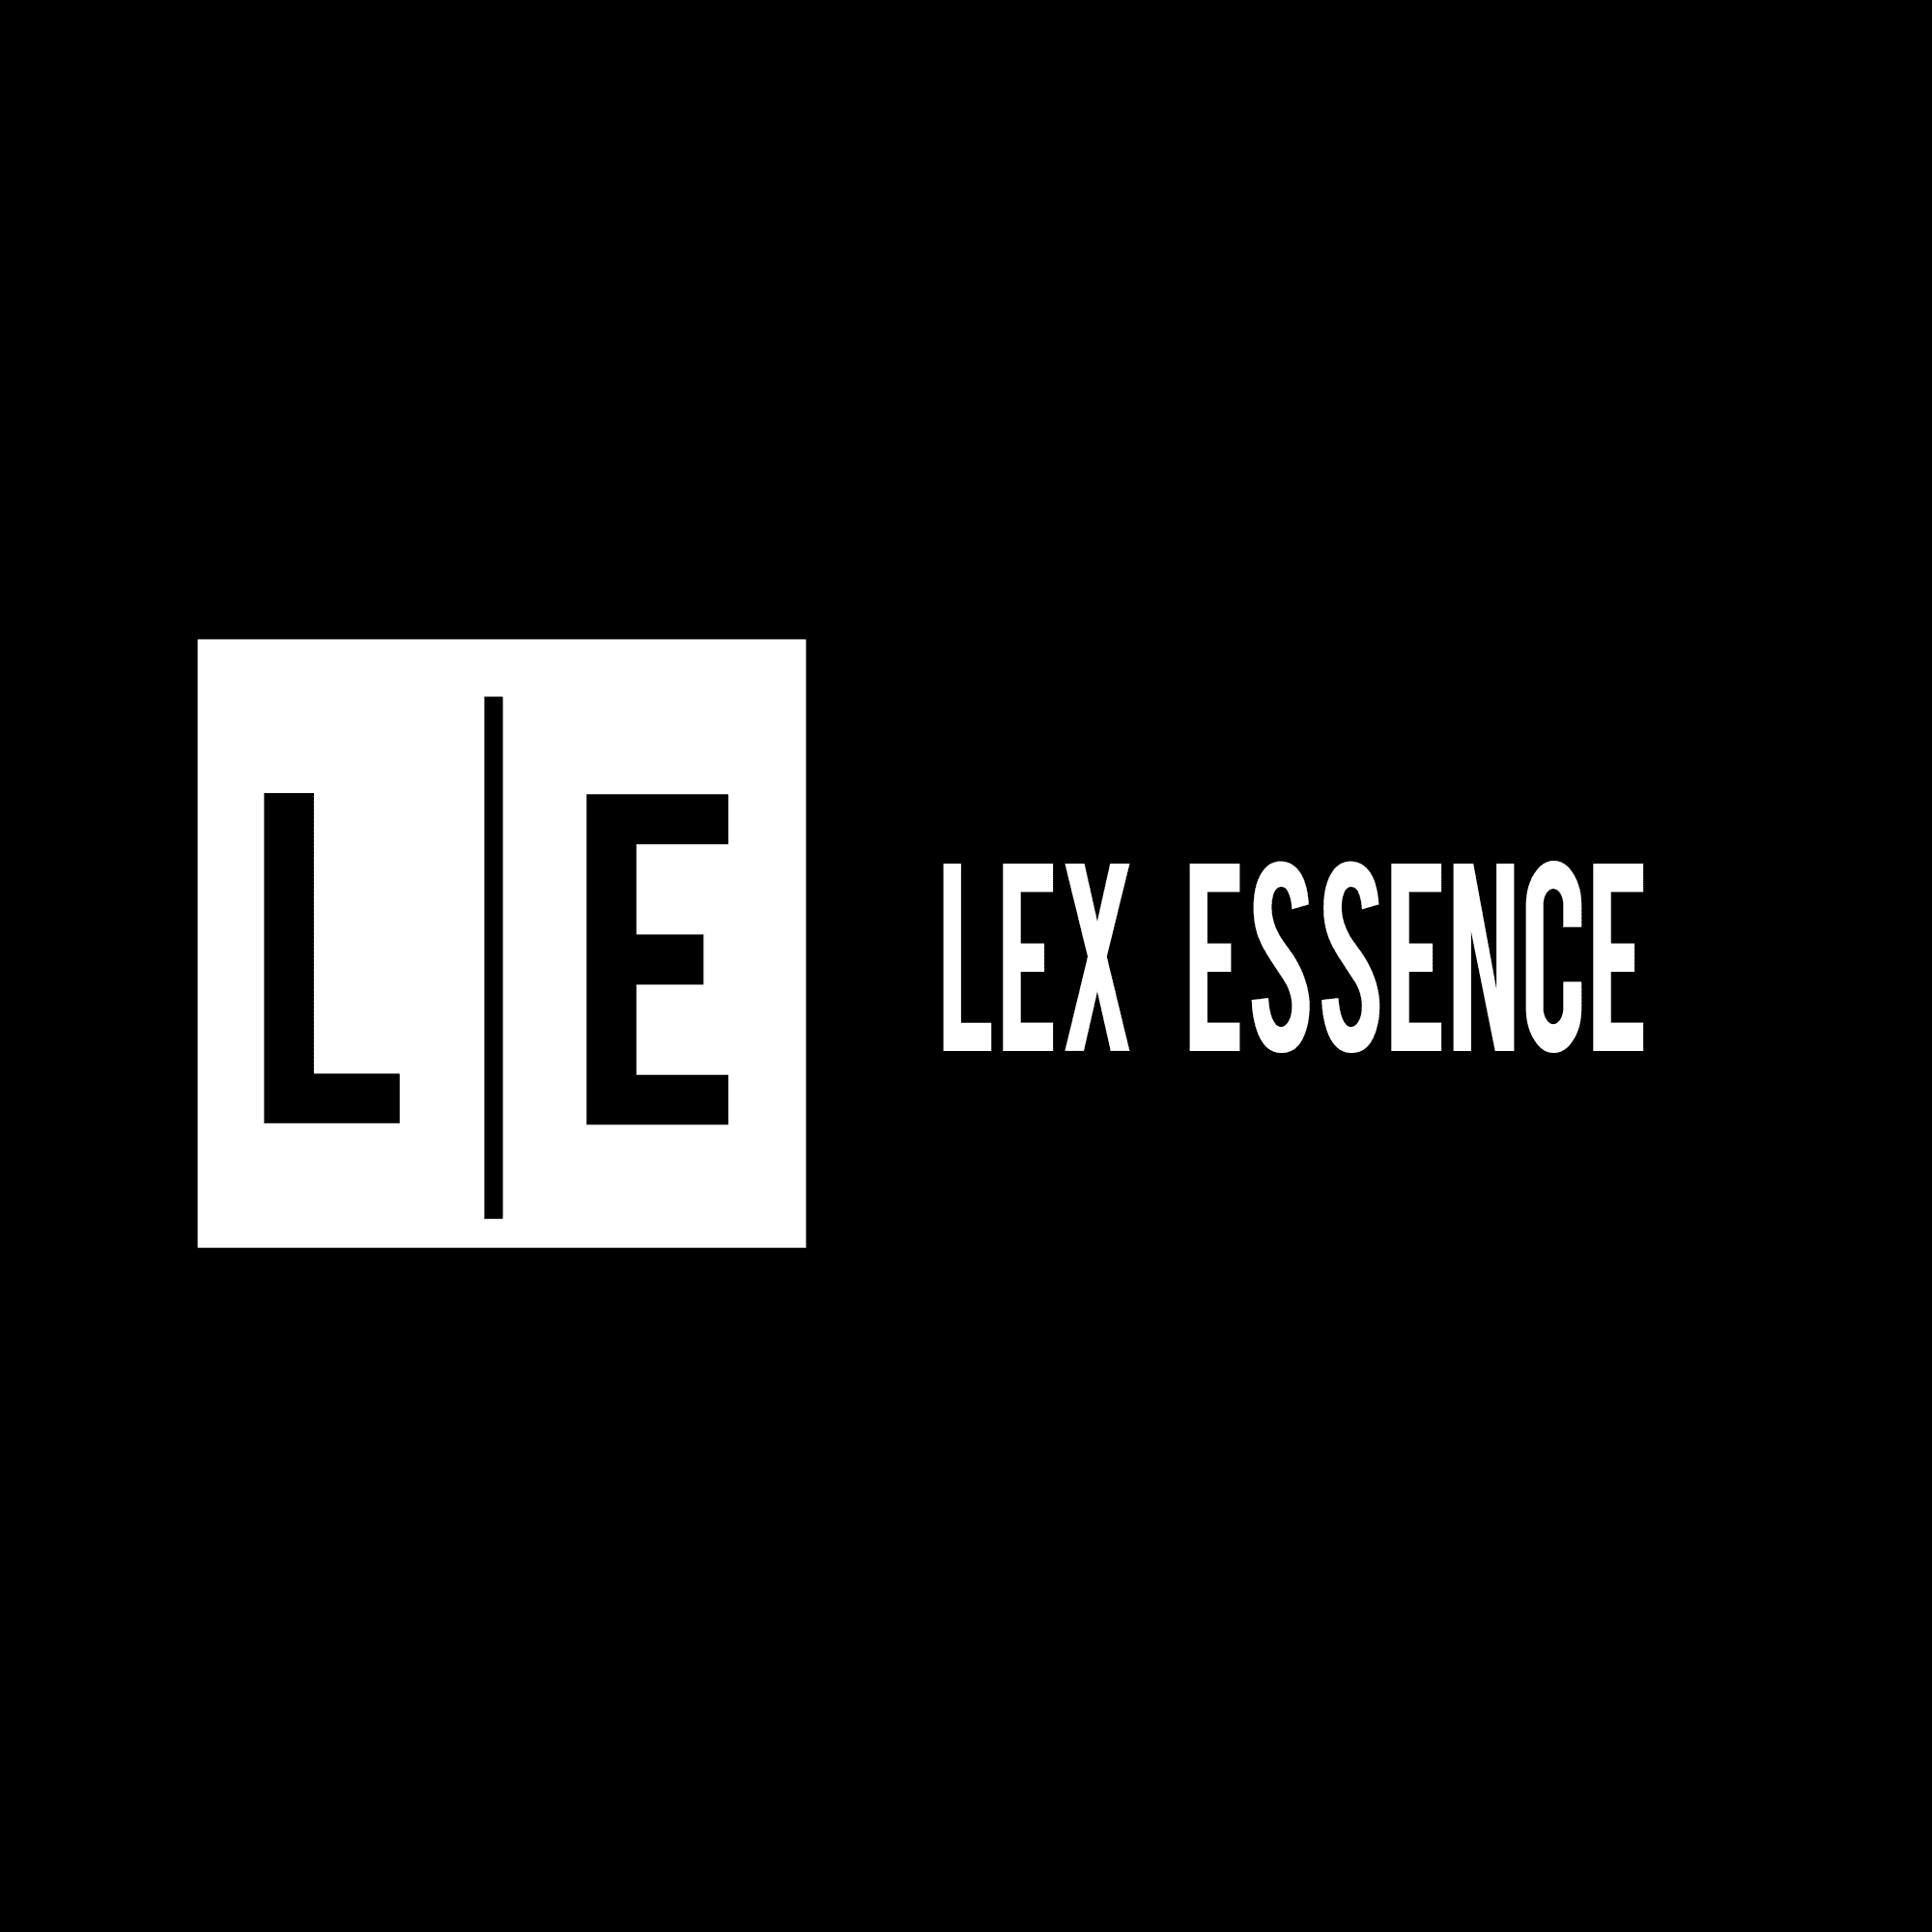 Lex Essence